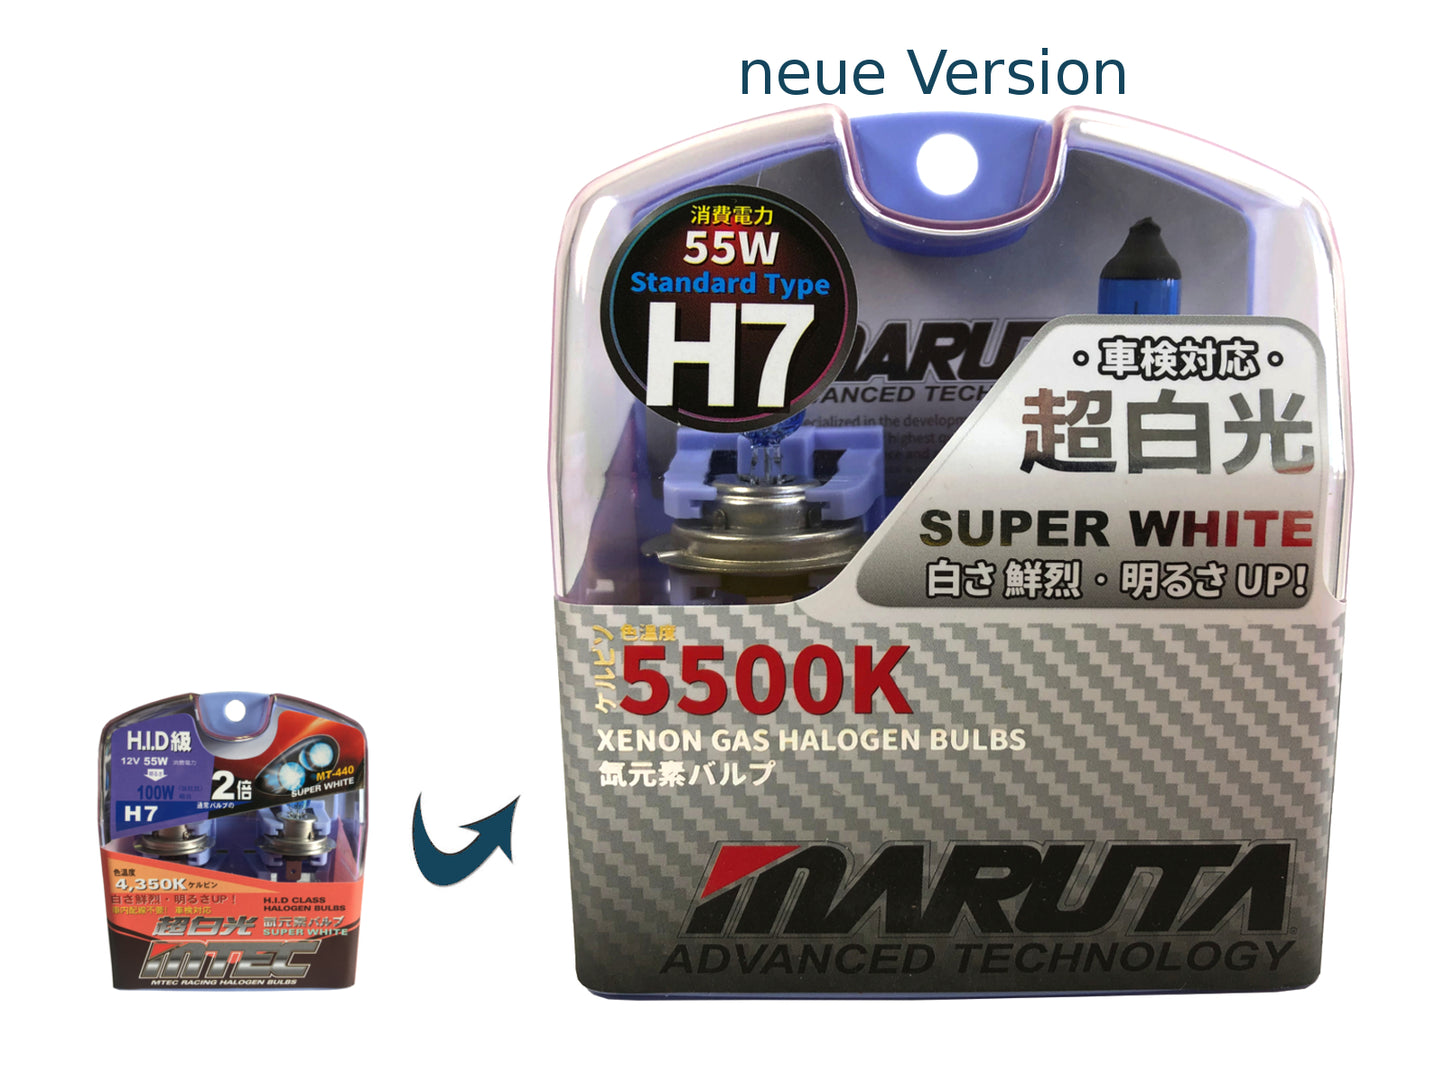 MARUTA SUPER WHITE H7 12V 55W Halogenlampe für Scheinwerfer, Abblendlicht,  5500K Xenon-Effekt, langlebige Xenon-Gas Birne mit hochwertigem Quarzglas &  [dse.one] – dse.one DE